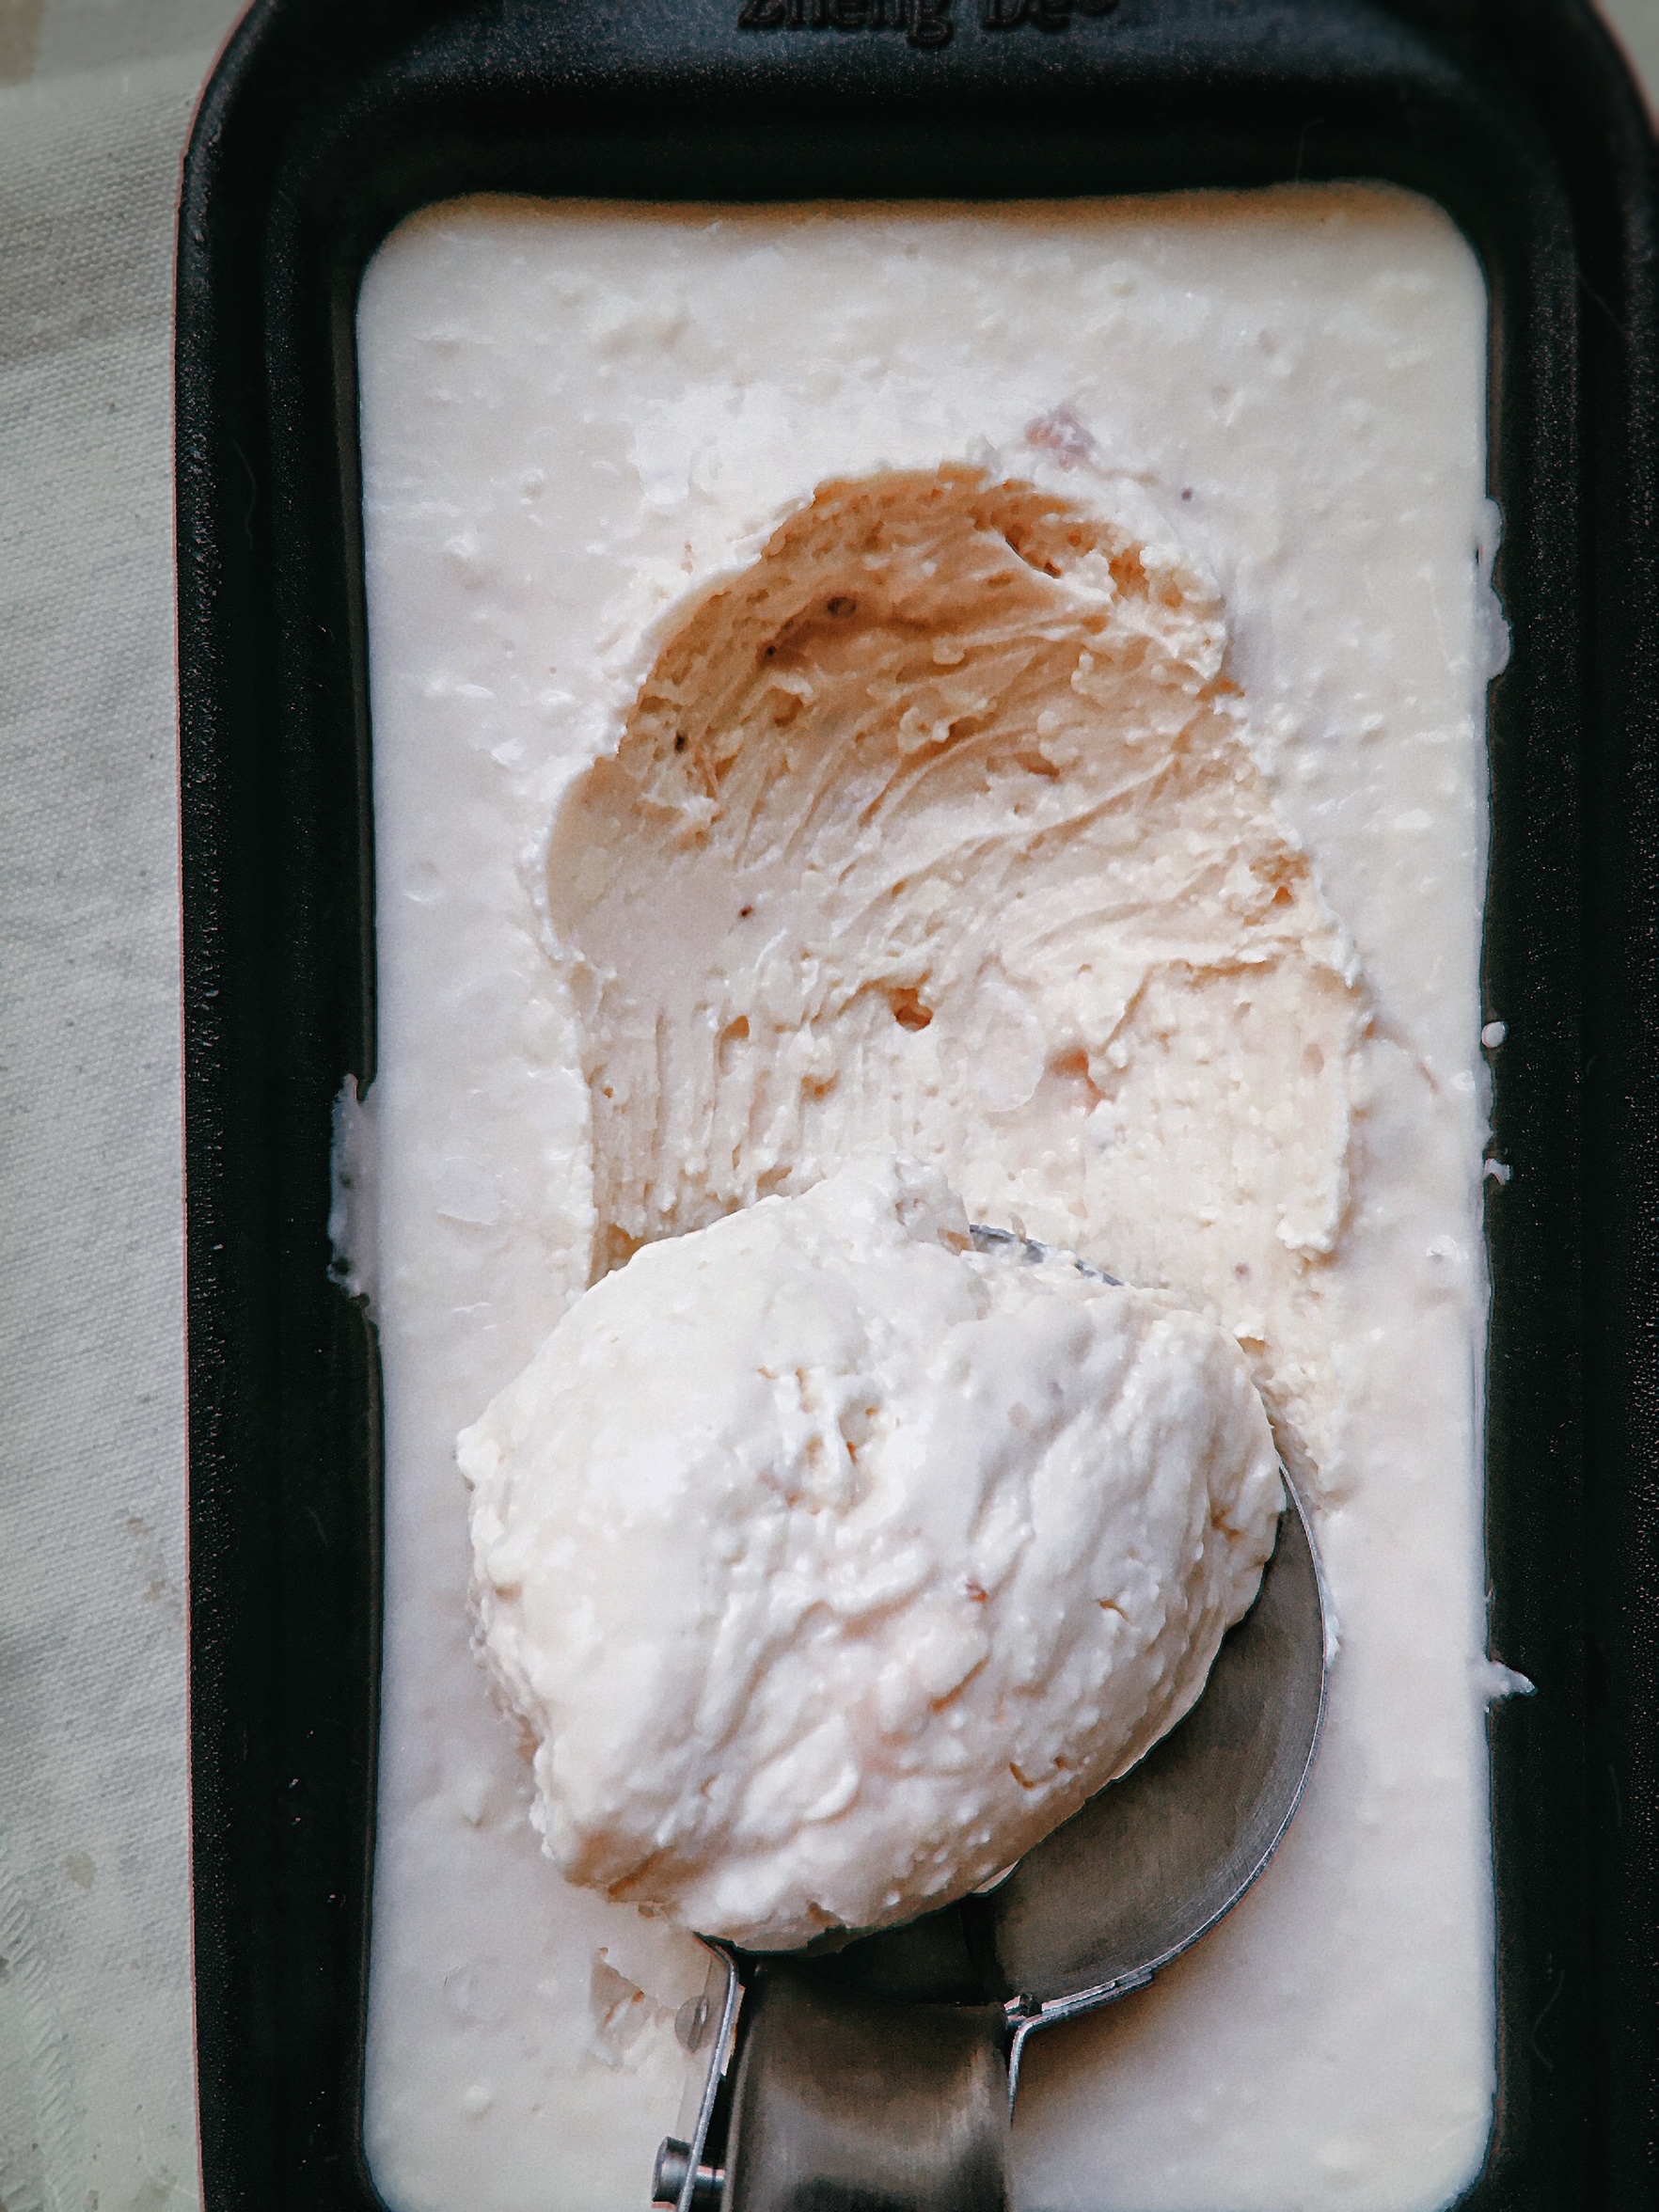 『简单粗暴』芝士冰淇淋|柔滑无冰渣|消耗奶油奶酪的做法